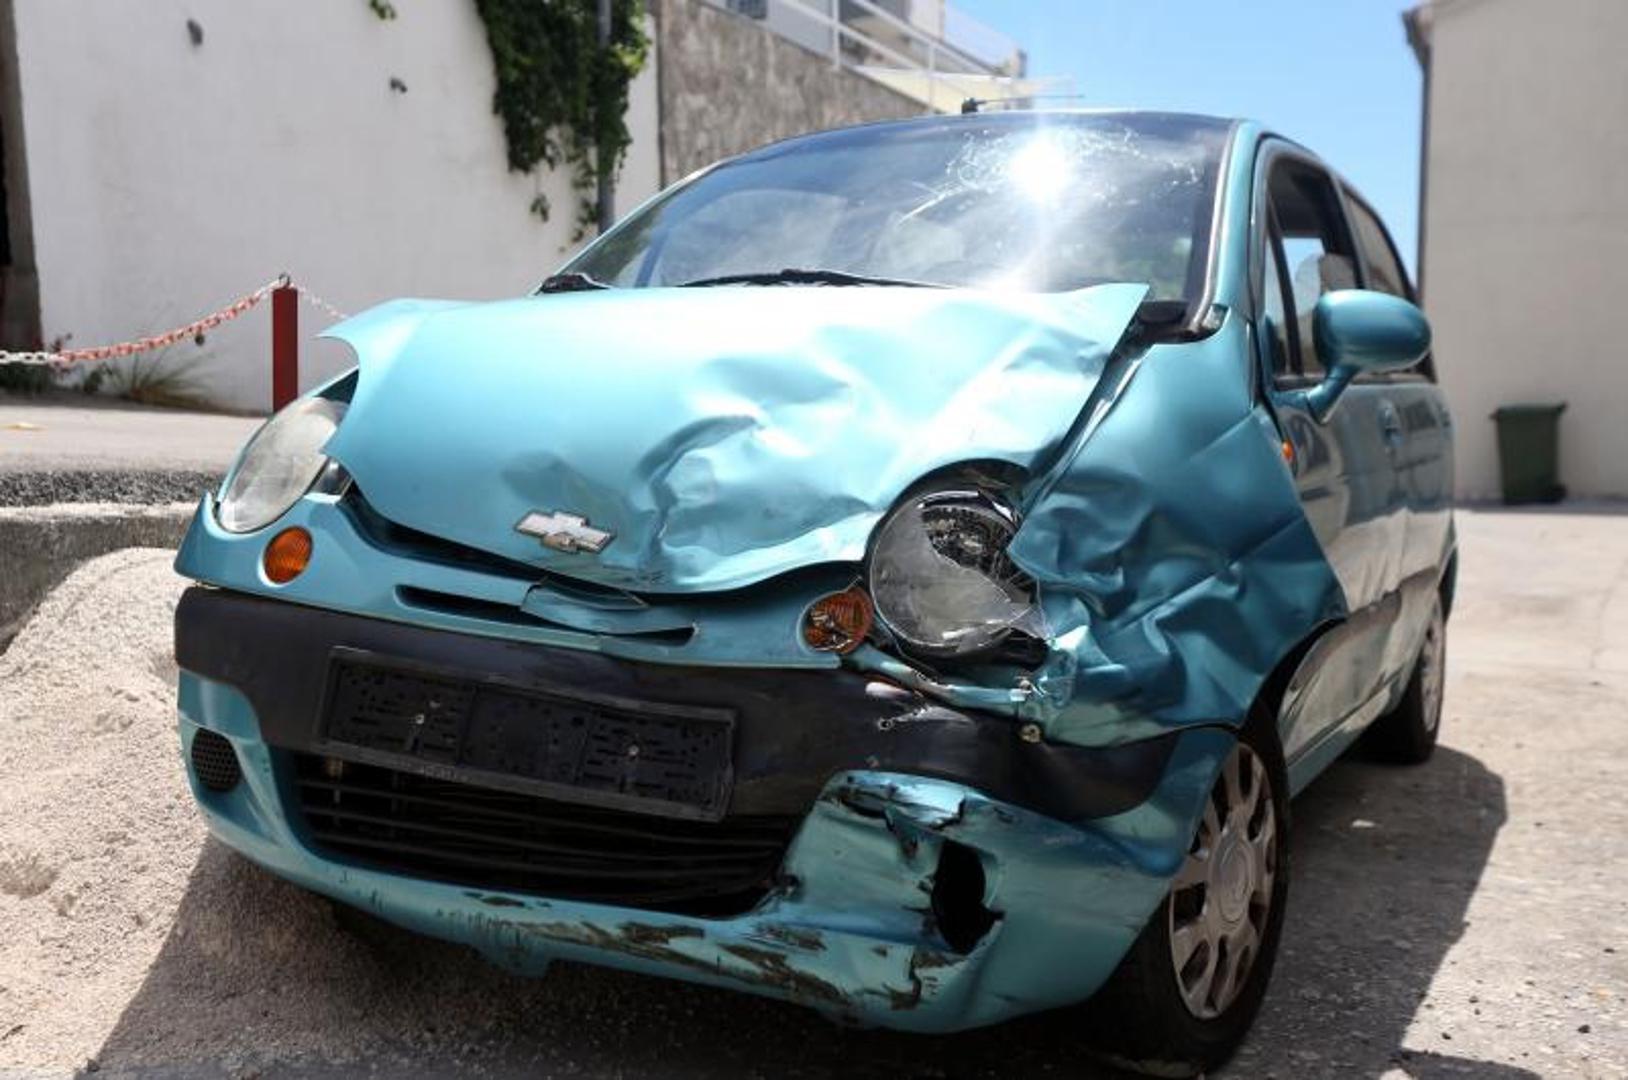 U Primoštenu, na cesti D-8 u sudaru dvaju automobila ozlijeđene su 4 osobe.